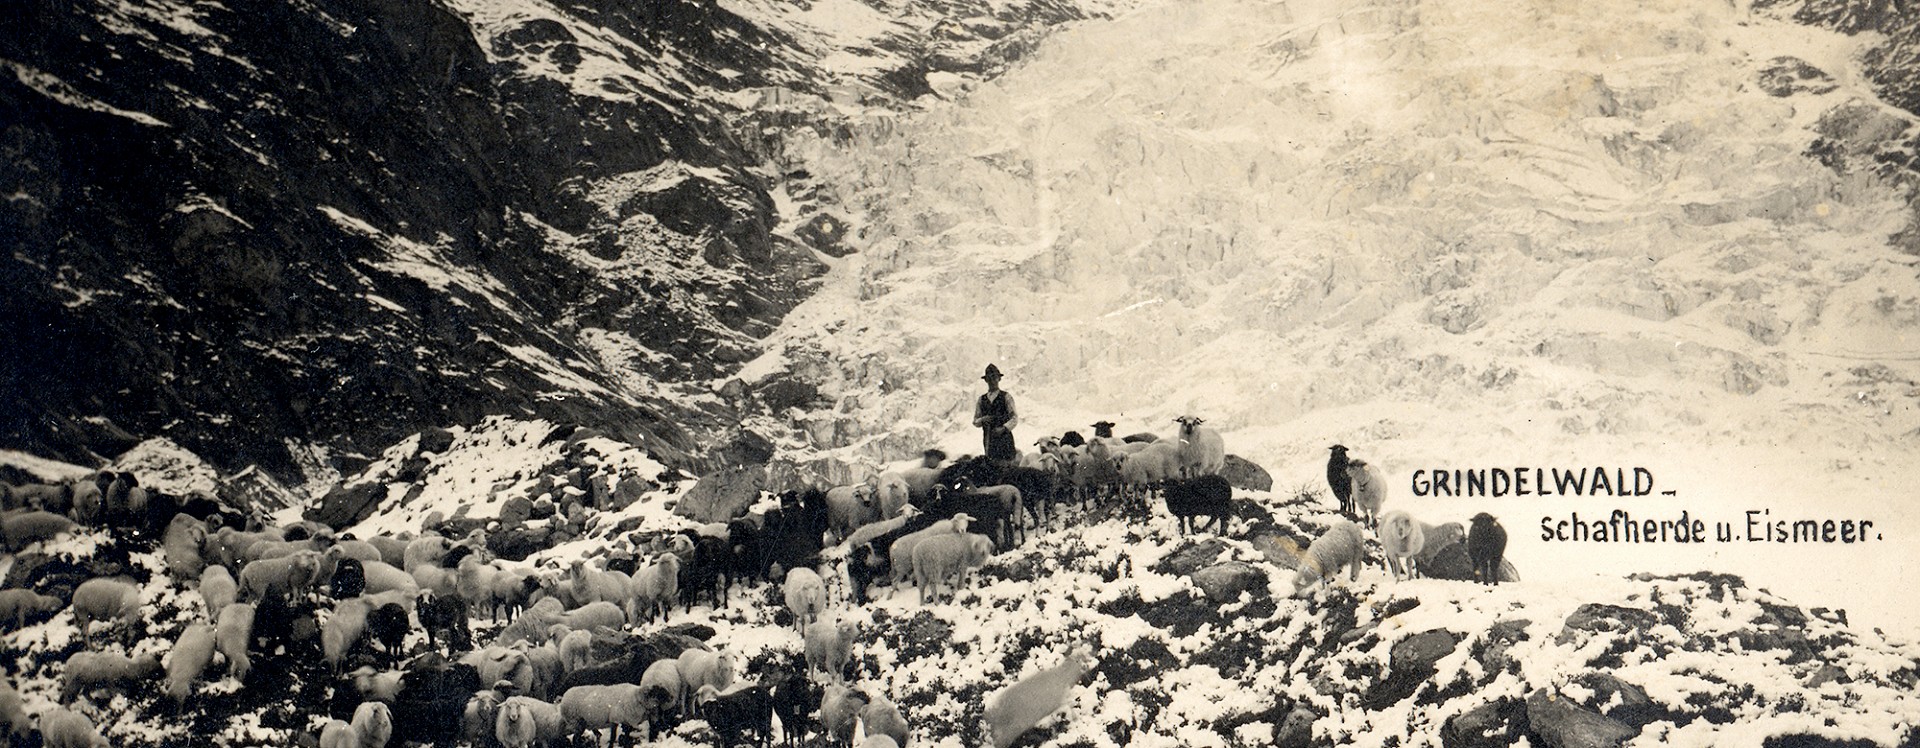 Histoire Association des guides de montagne Grindelwald